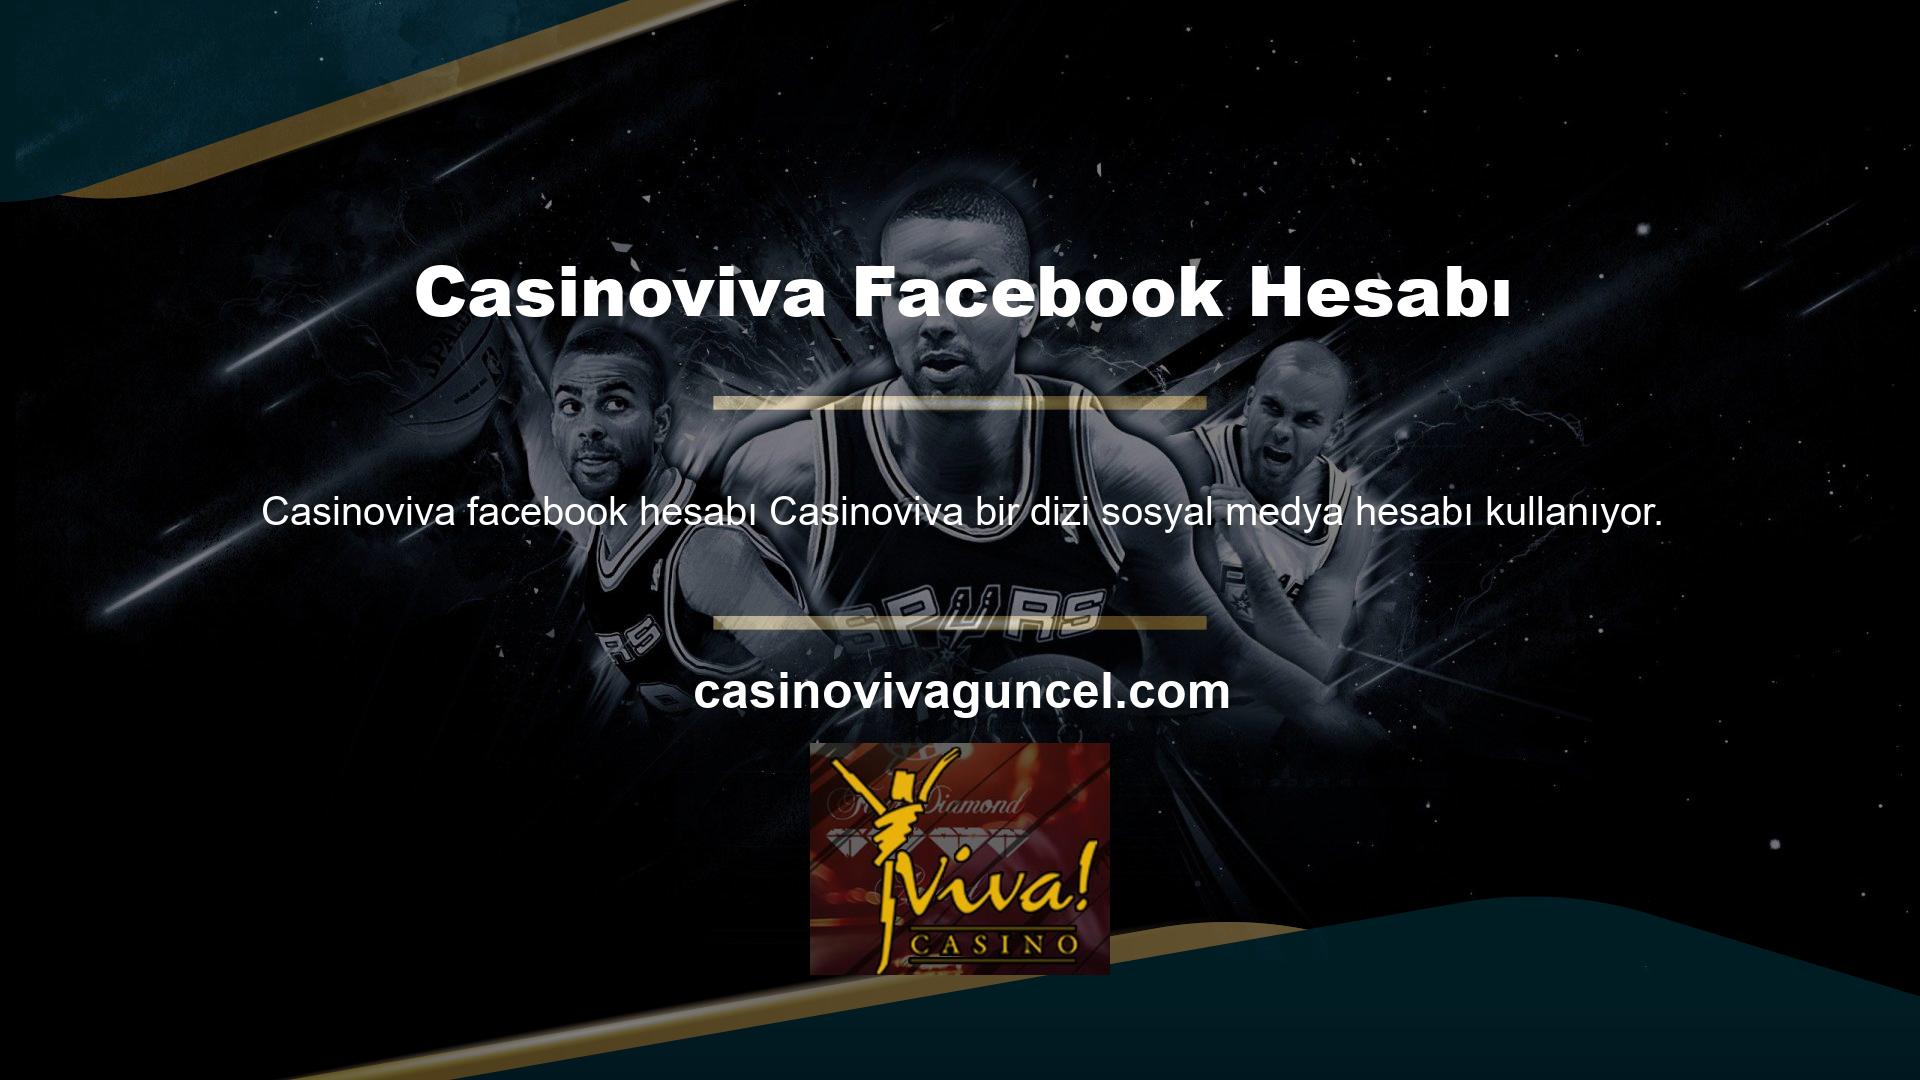 Bu hesaplardan biri de Casinoviva Facebook ve Twitter hesaplarıdır